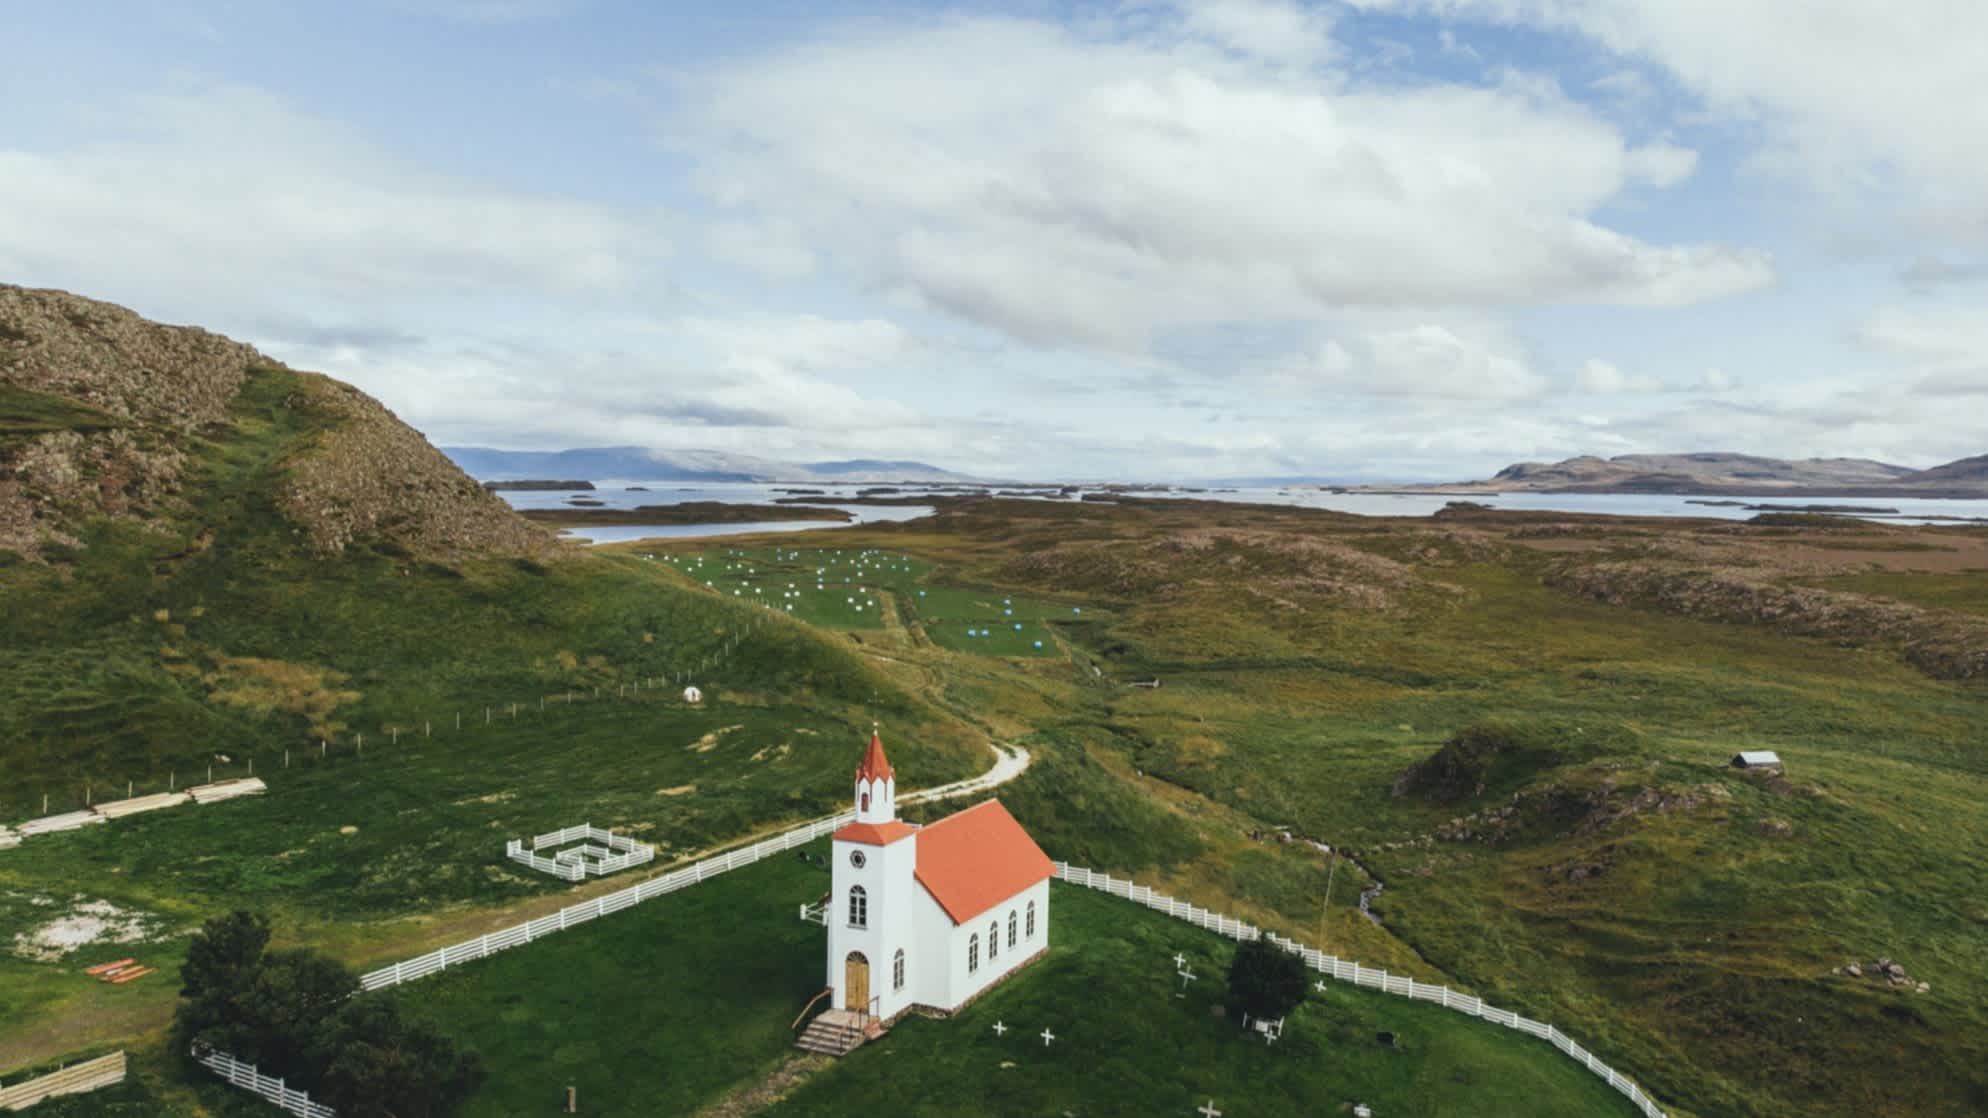 Malerische Luftaufnahme einer Kirche in Island, umgeben von grünen Wiesen, Bergen, Klippen und Meer am Horizont, bei wolkigem Wetter. 